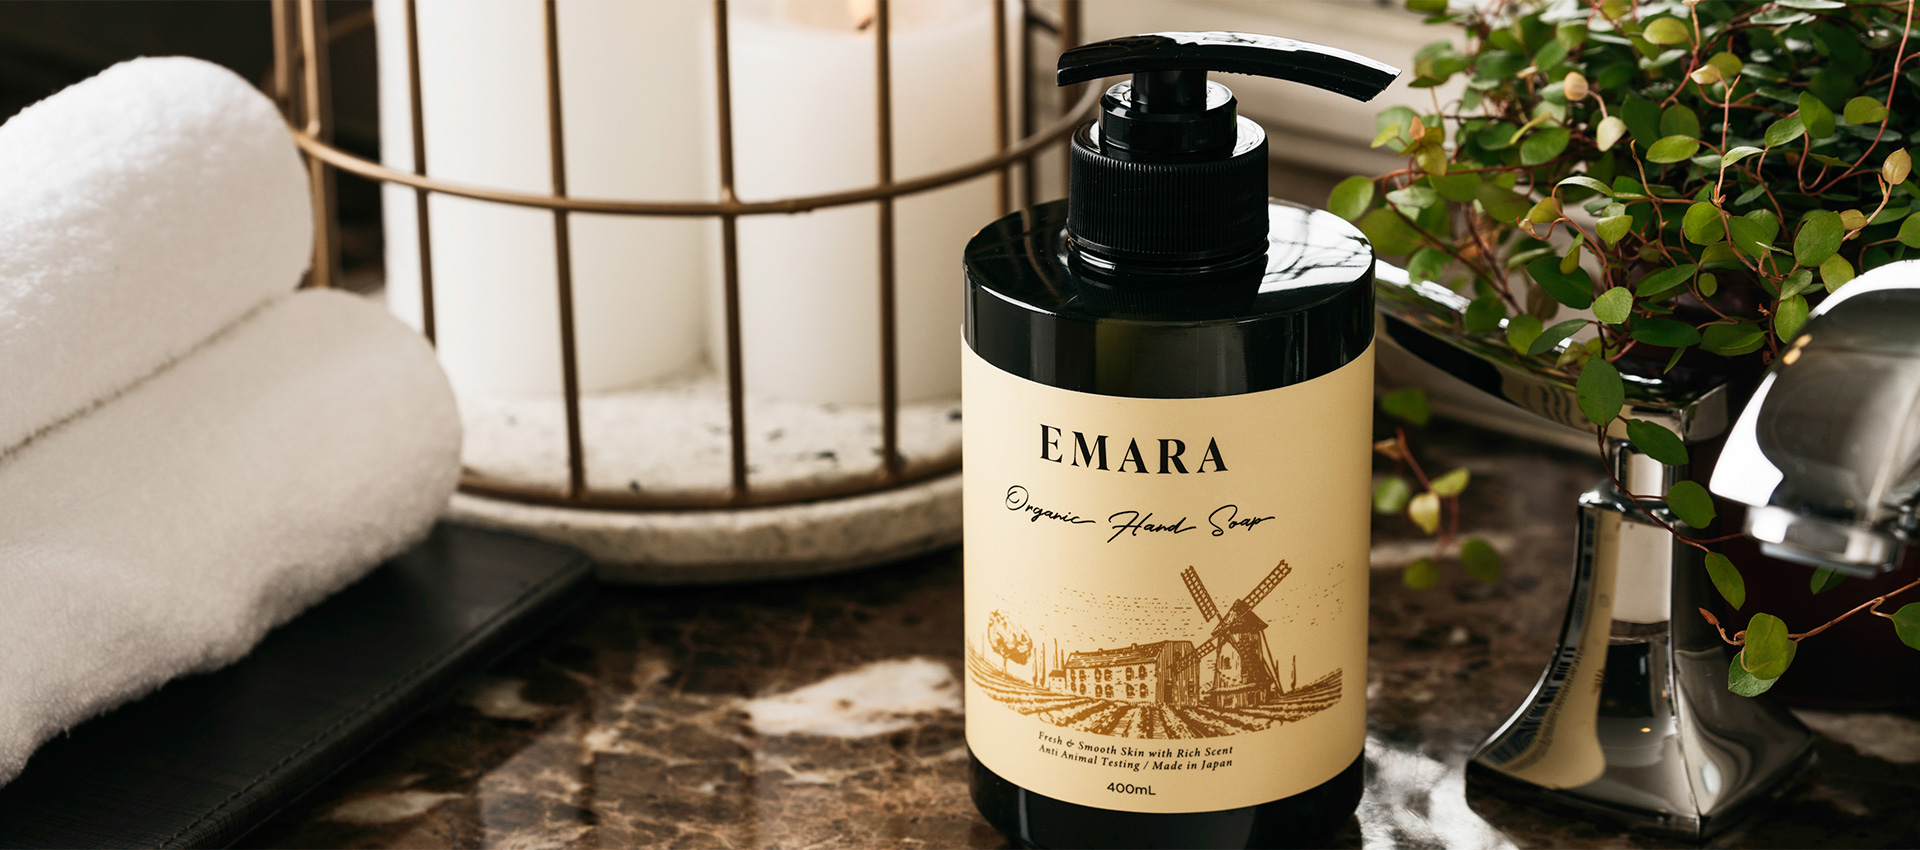 EMARA Organic Hand Soap